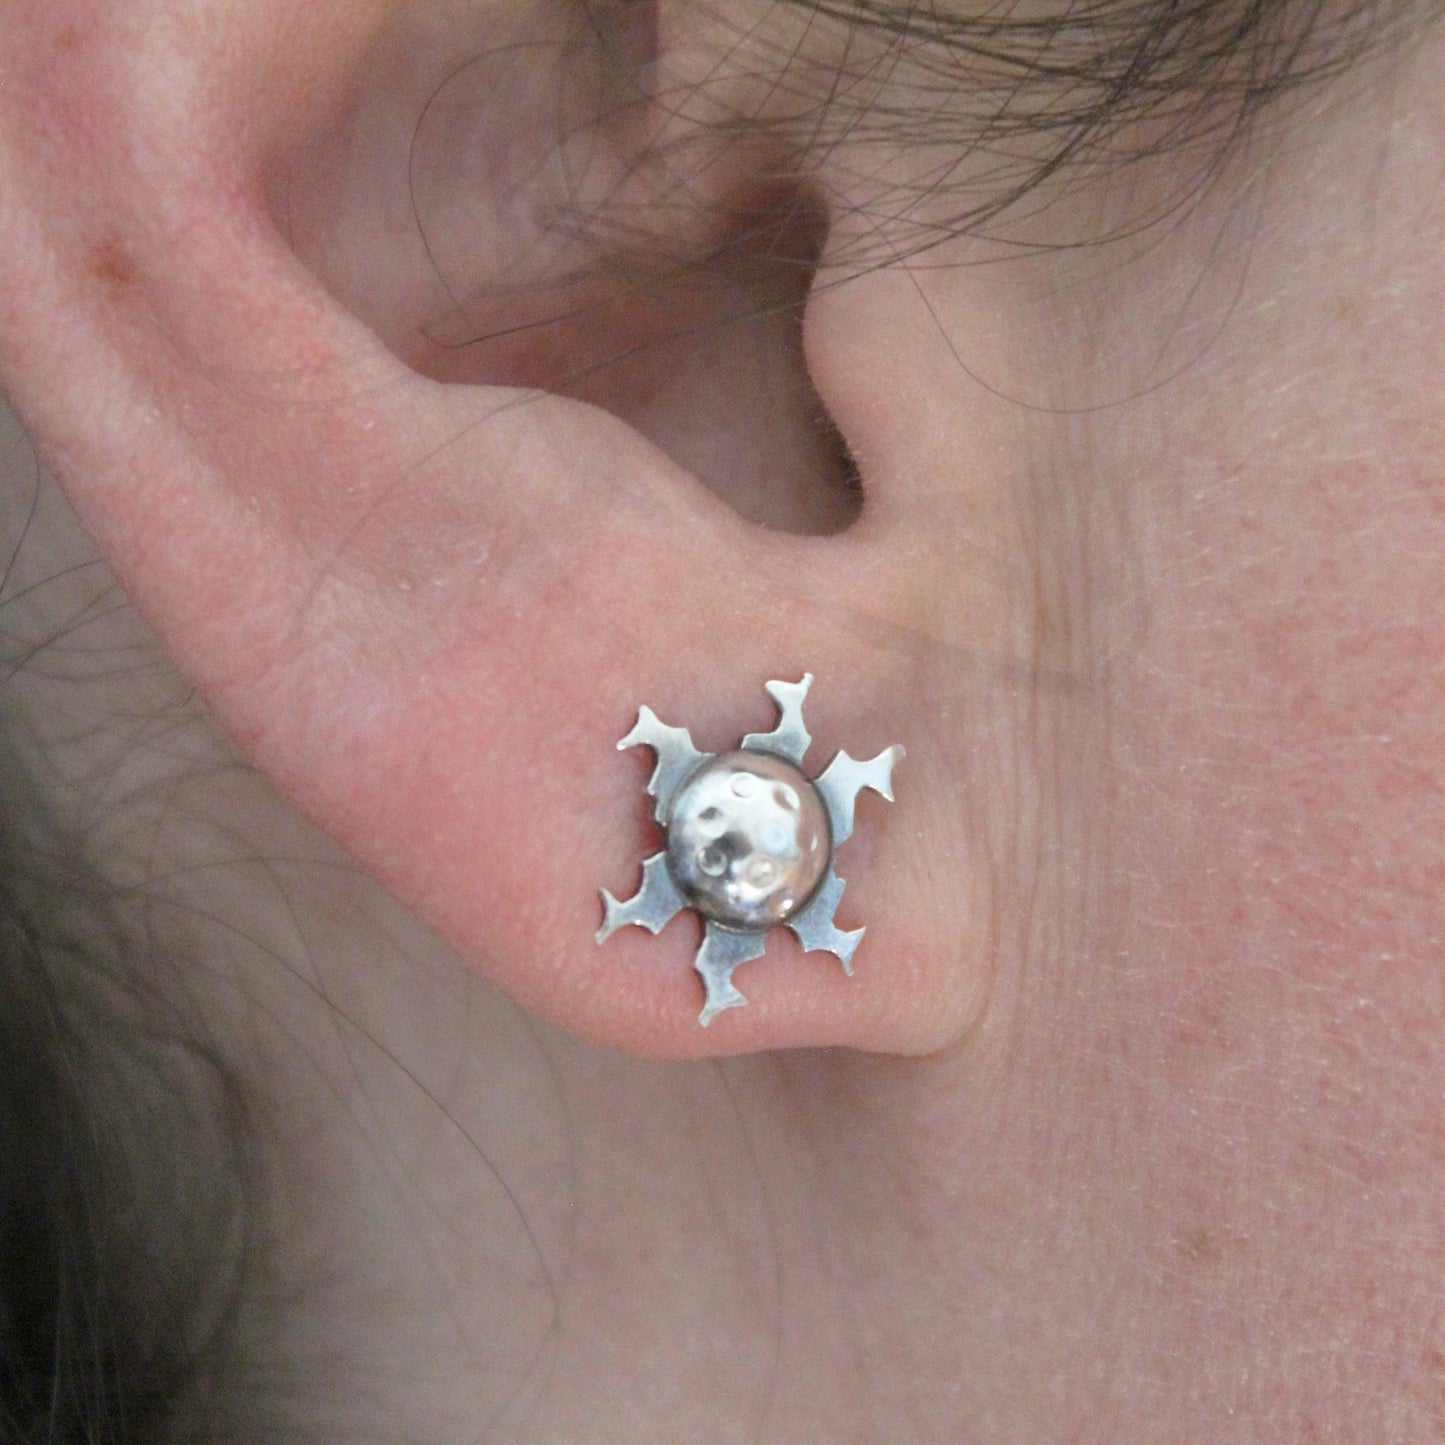 Eguzkilores earrings in 925 silver